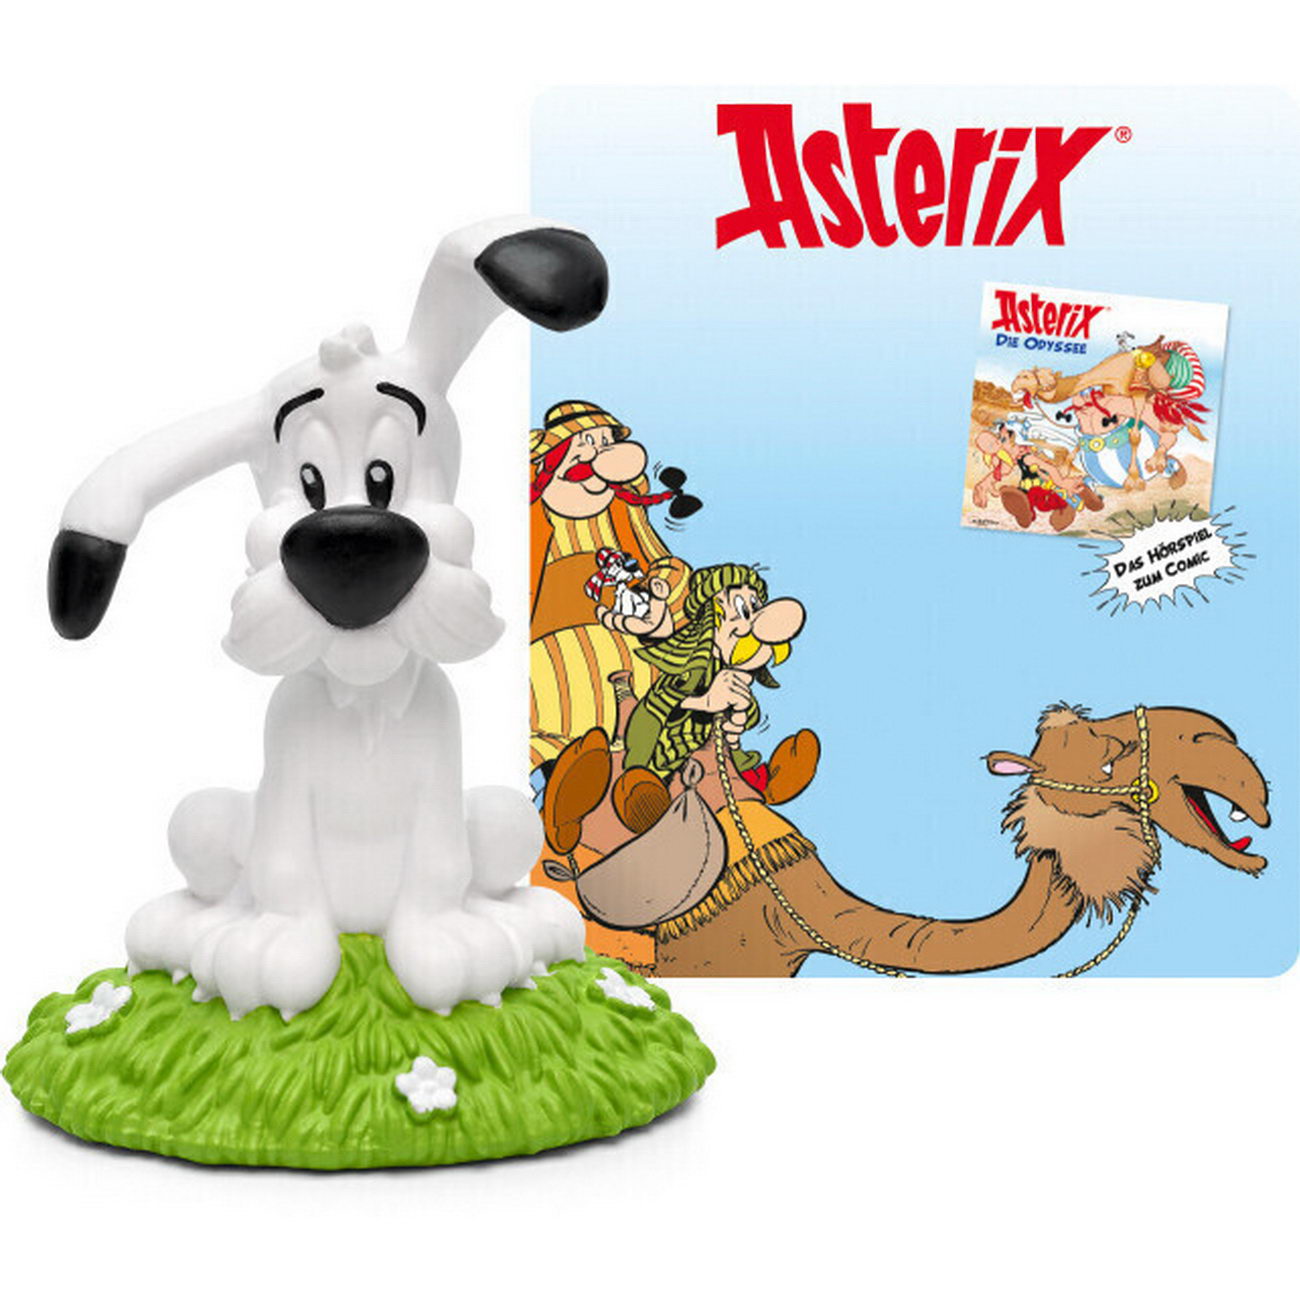 Tonies - Asterix - Idefix - Die Odyssee - Hörspiel